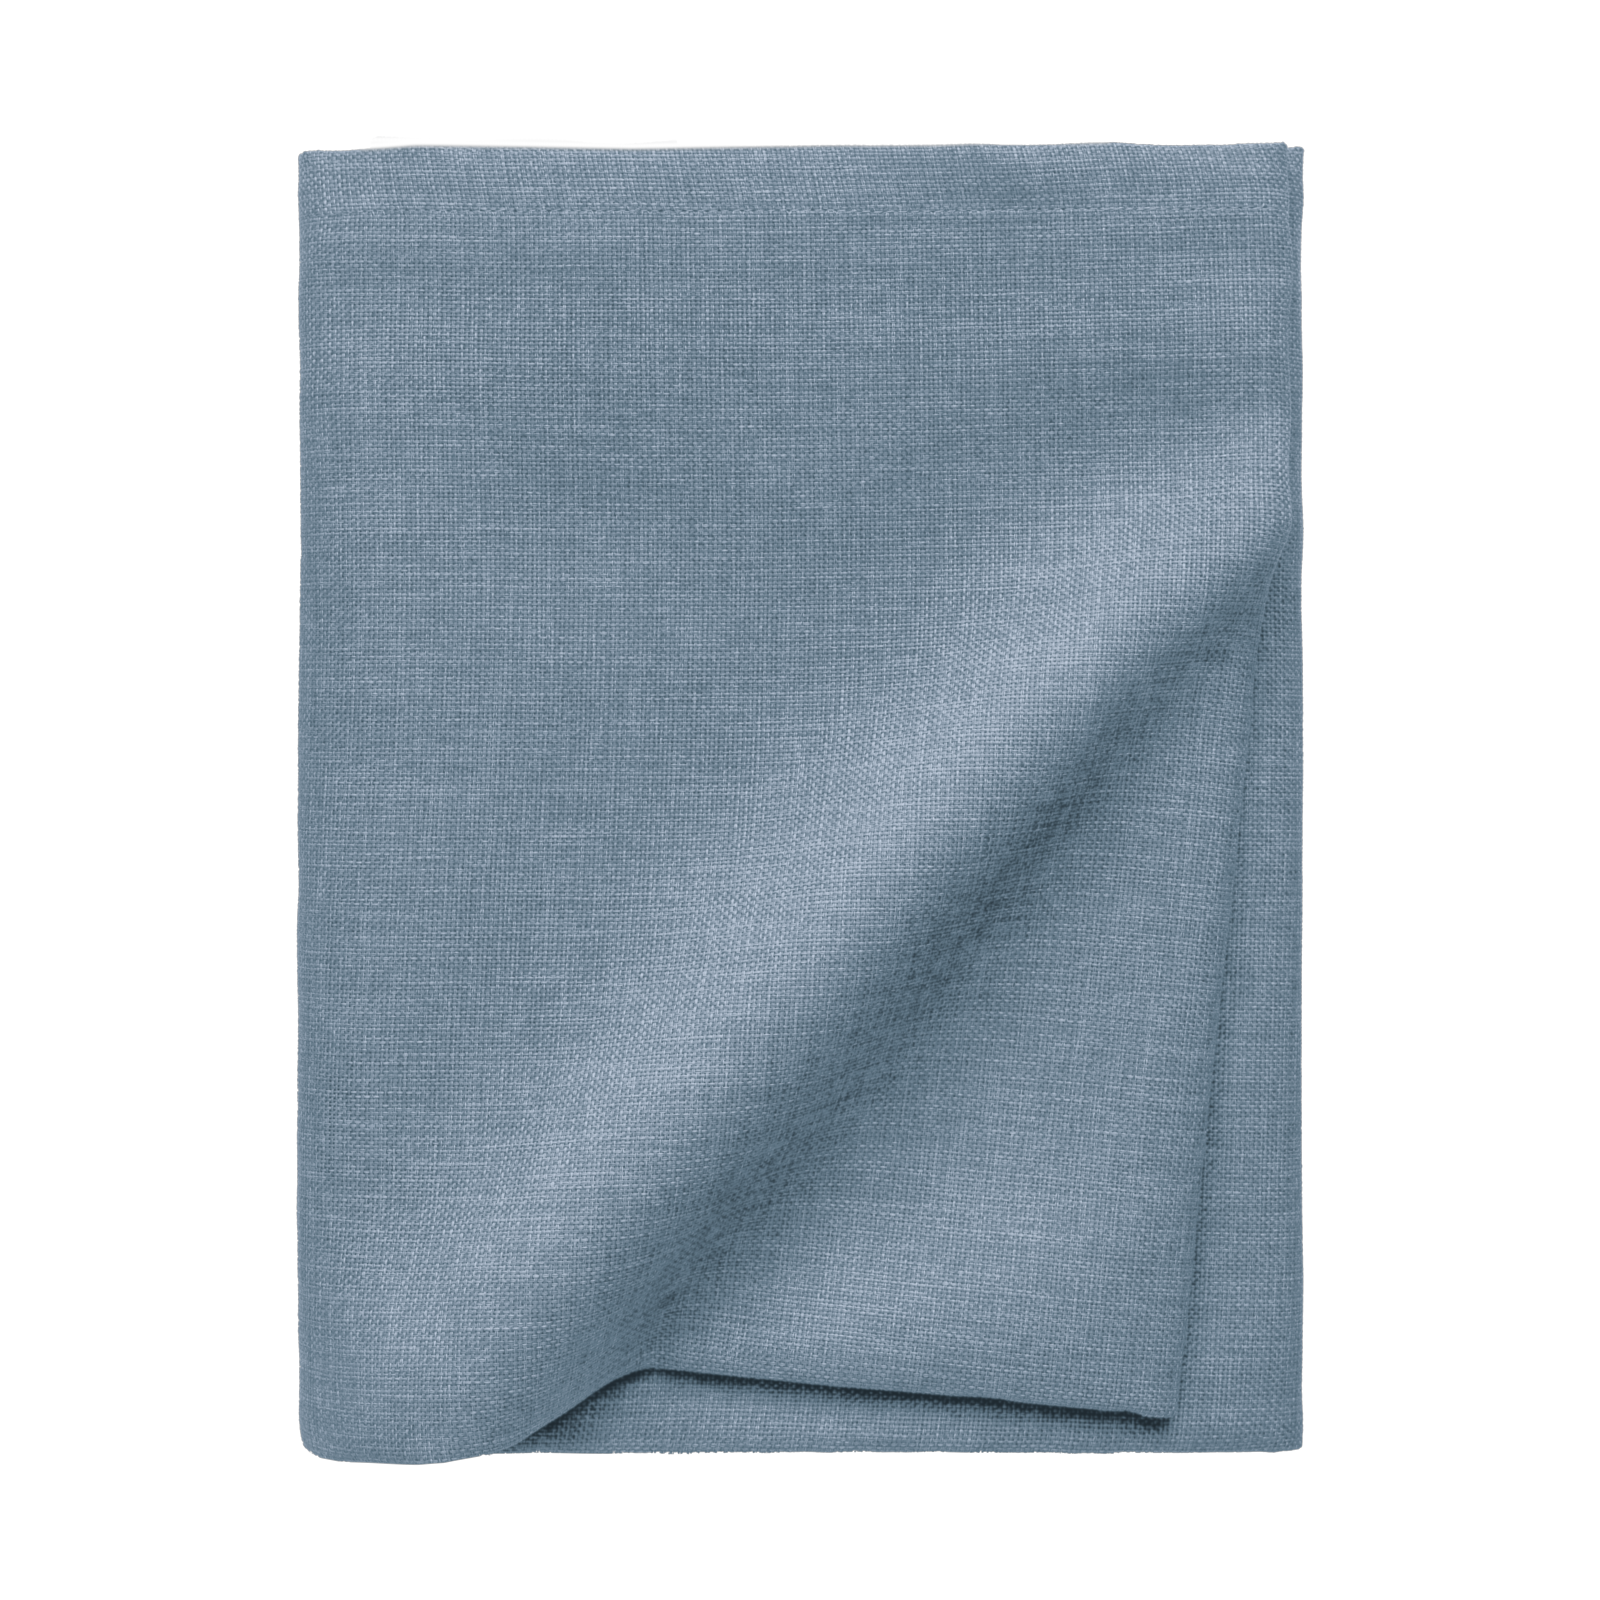 Größe: 150x 250 cm Farbe: hellblau #farbe_hellblau